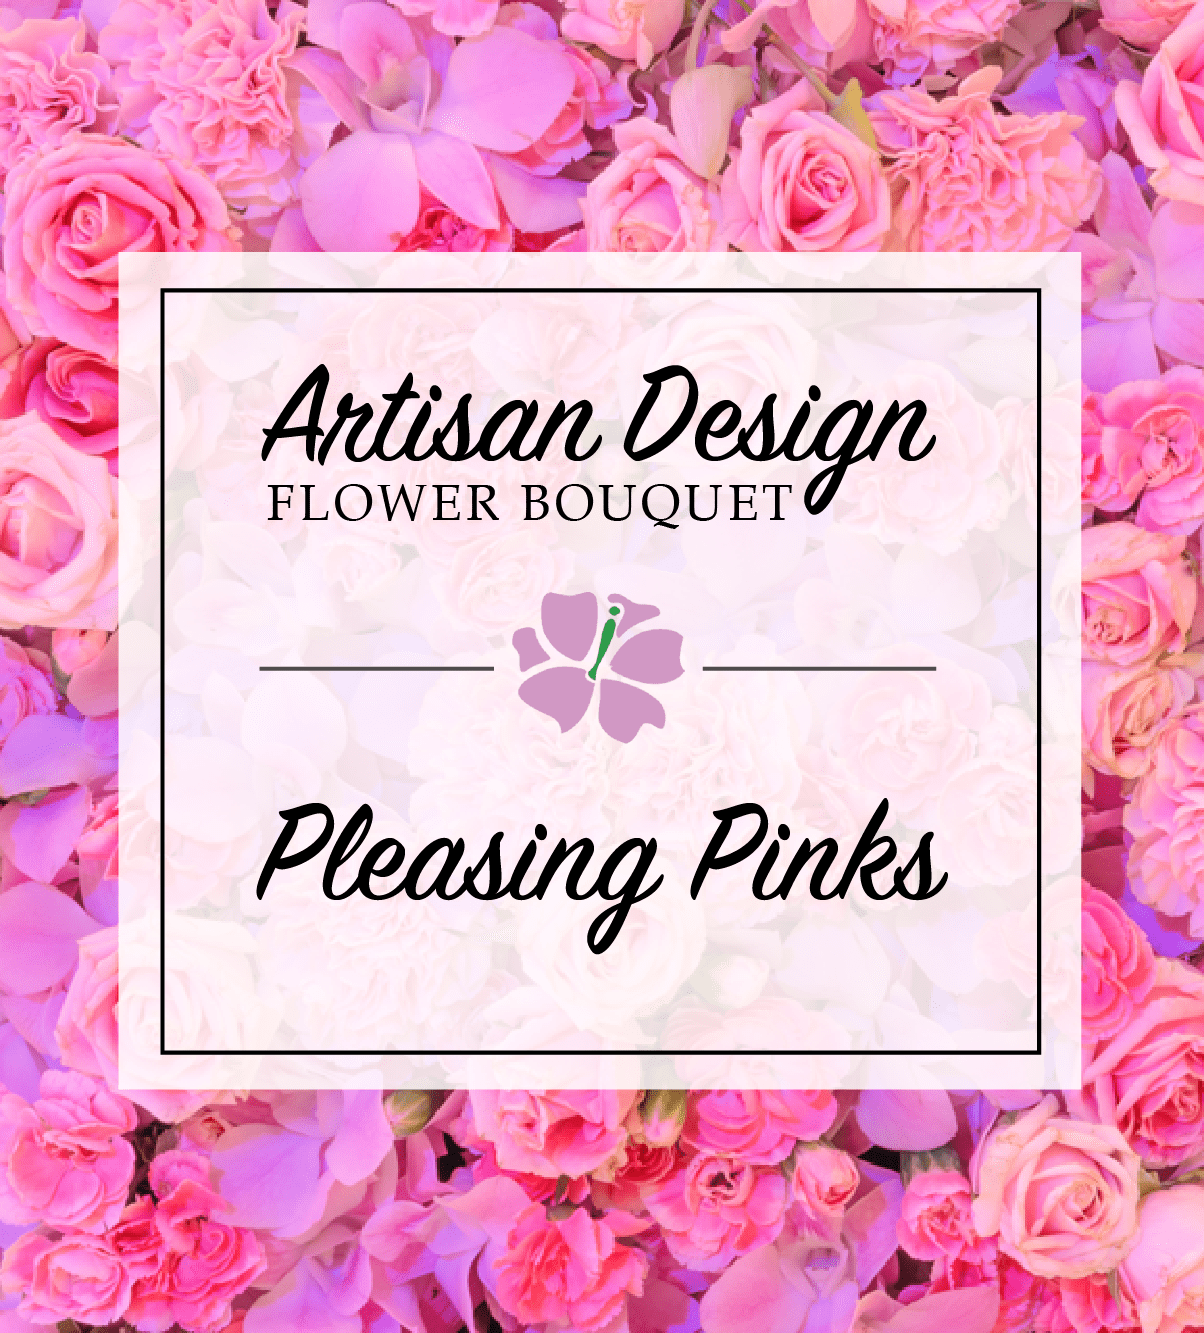 Artist's Design: Pleasing Pinks | Avas Flowers